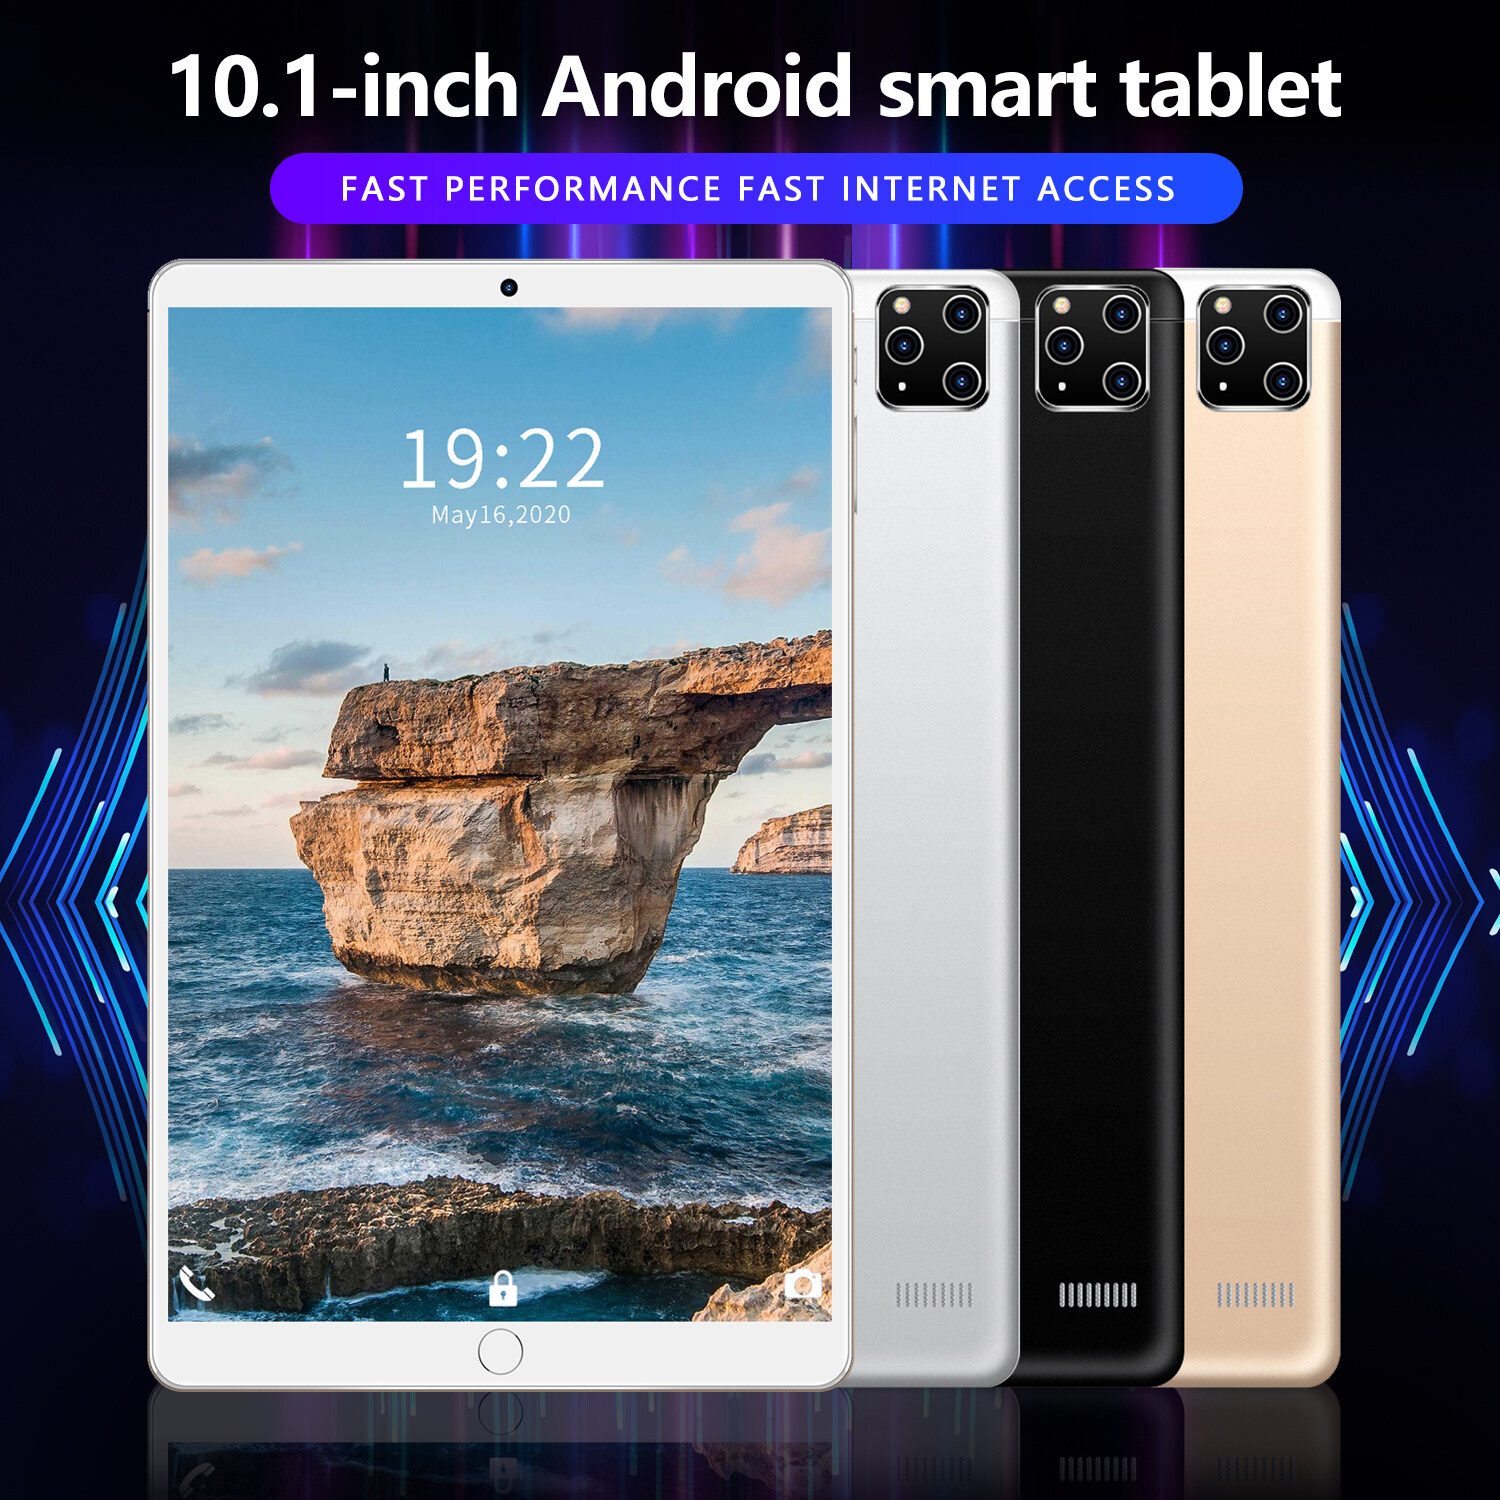 เกี่ยวกับ 2022 ใหม่ แท็บเล็ต new Tablet pc RAM8G ROM512G 10.1 นิ้ว โทรได้ Full HD แท็บเล็ตถูกๆ แท็บเล็ตราคาถูก Andorid 10.0 จัดส่งฟรี รองรับภาษาไทย หน่วยประมวลผล 10-core แท็บเล็ตโทรได้ 4g/5G แท็บเล็ตสำหรับเล่นเกมราคาถูก แท็บเล็ตราคาถูกๆ แท็บเล็ตราคาถูกรุ่นล่าสุด